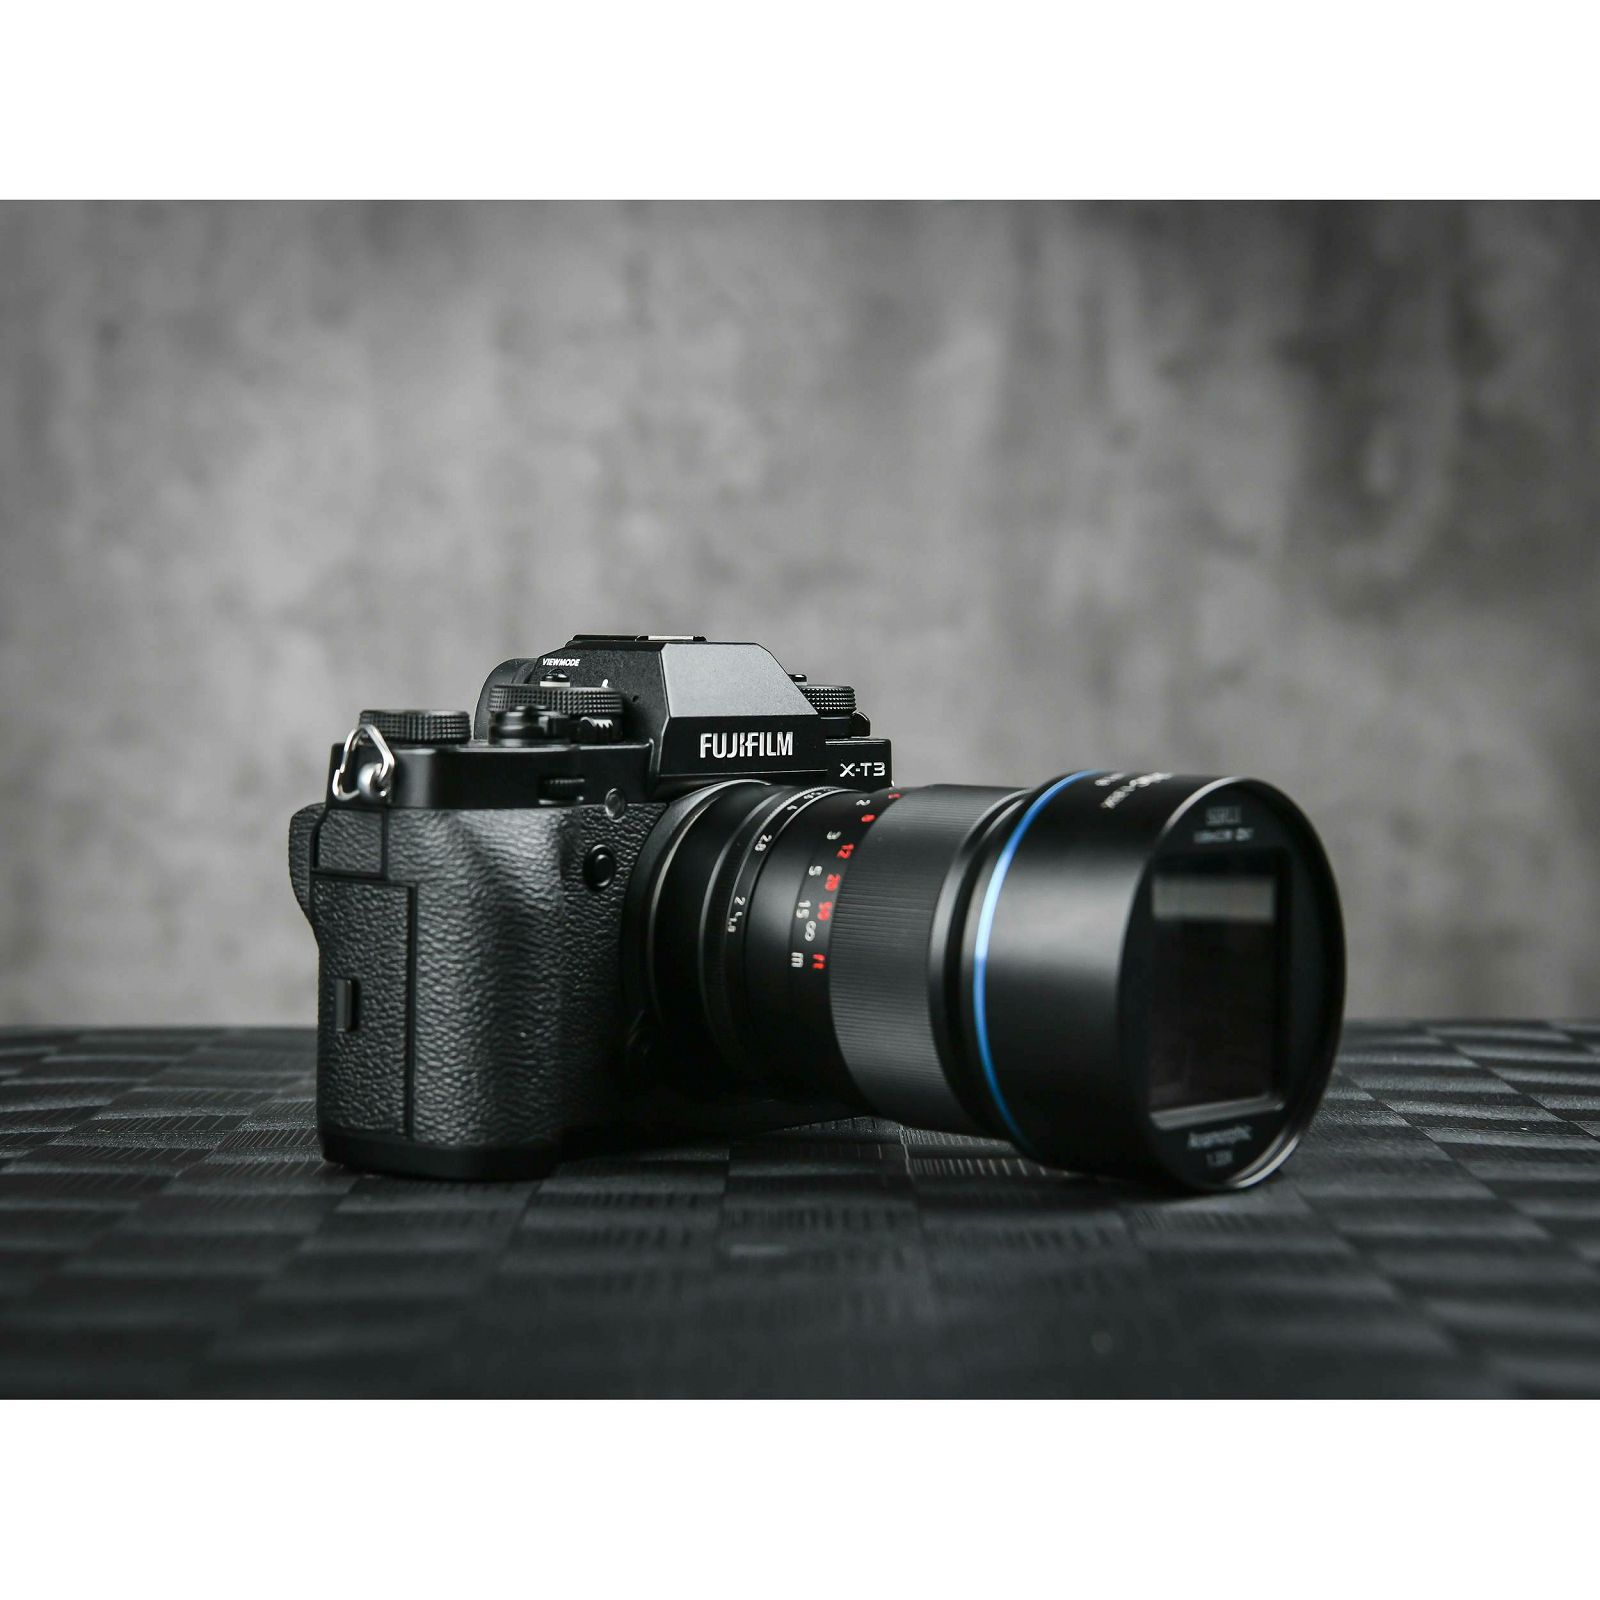 Sirui 50mm f/1.8 1.33x Anamorphic objektiv za Fujifilm X (SR-MEK7X)